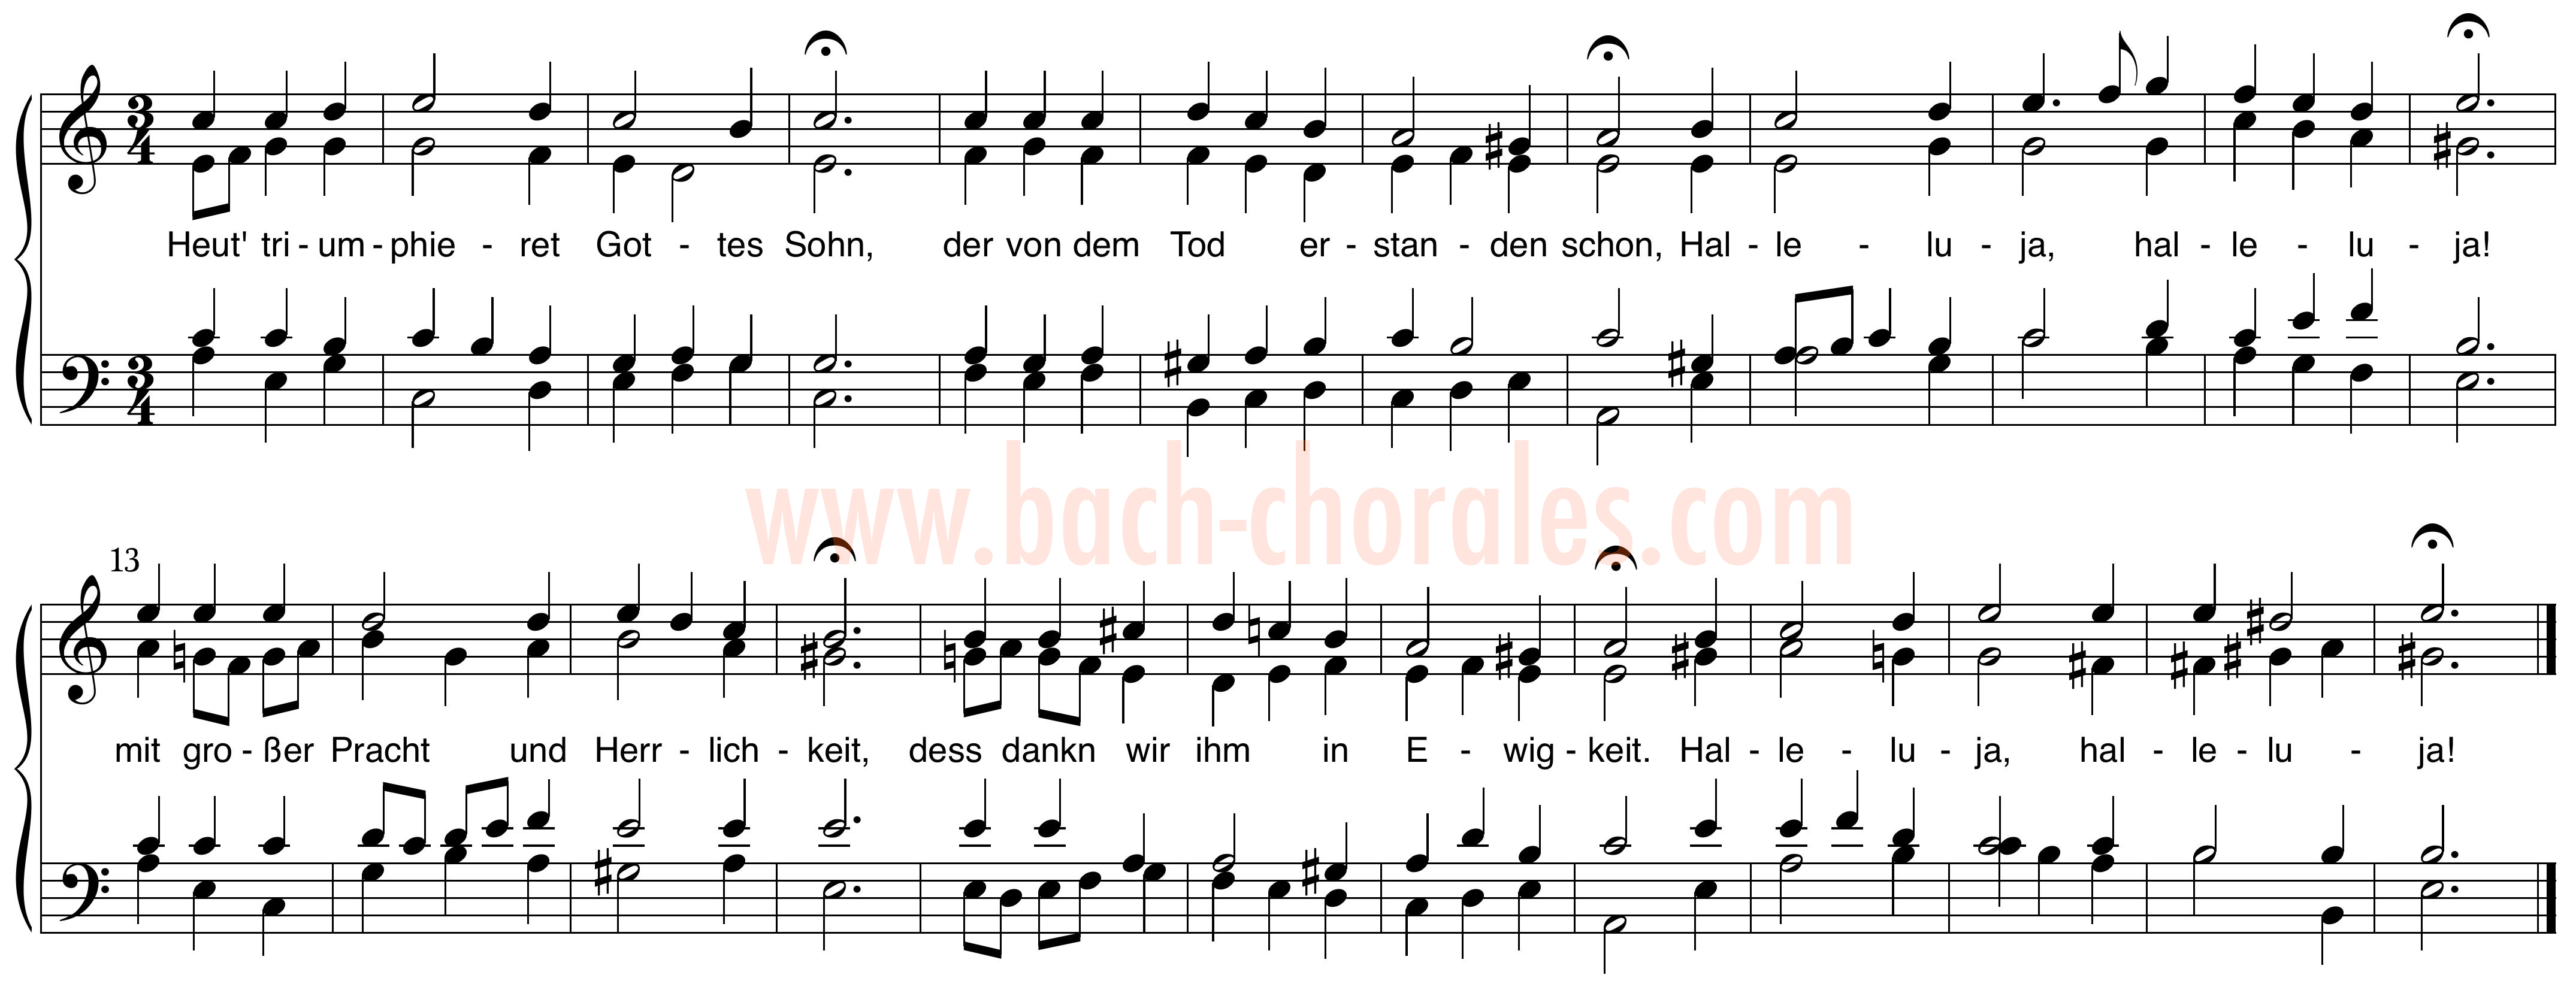 notenbeeld BWV 342 op https://www.bach-chorales.com/